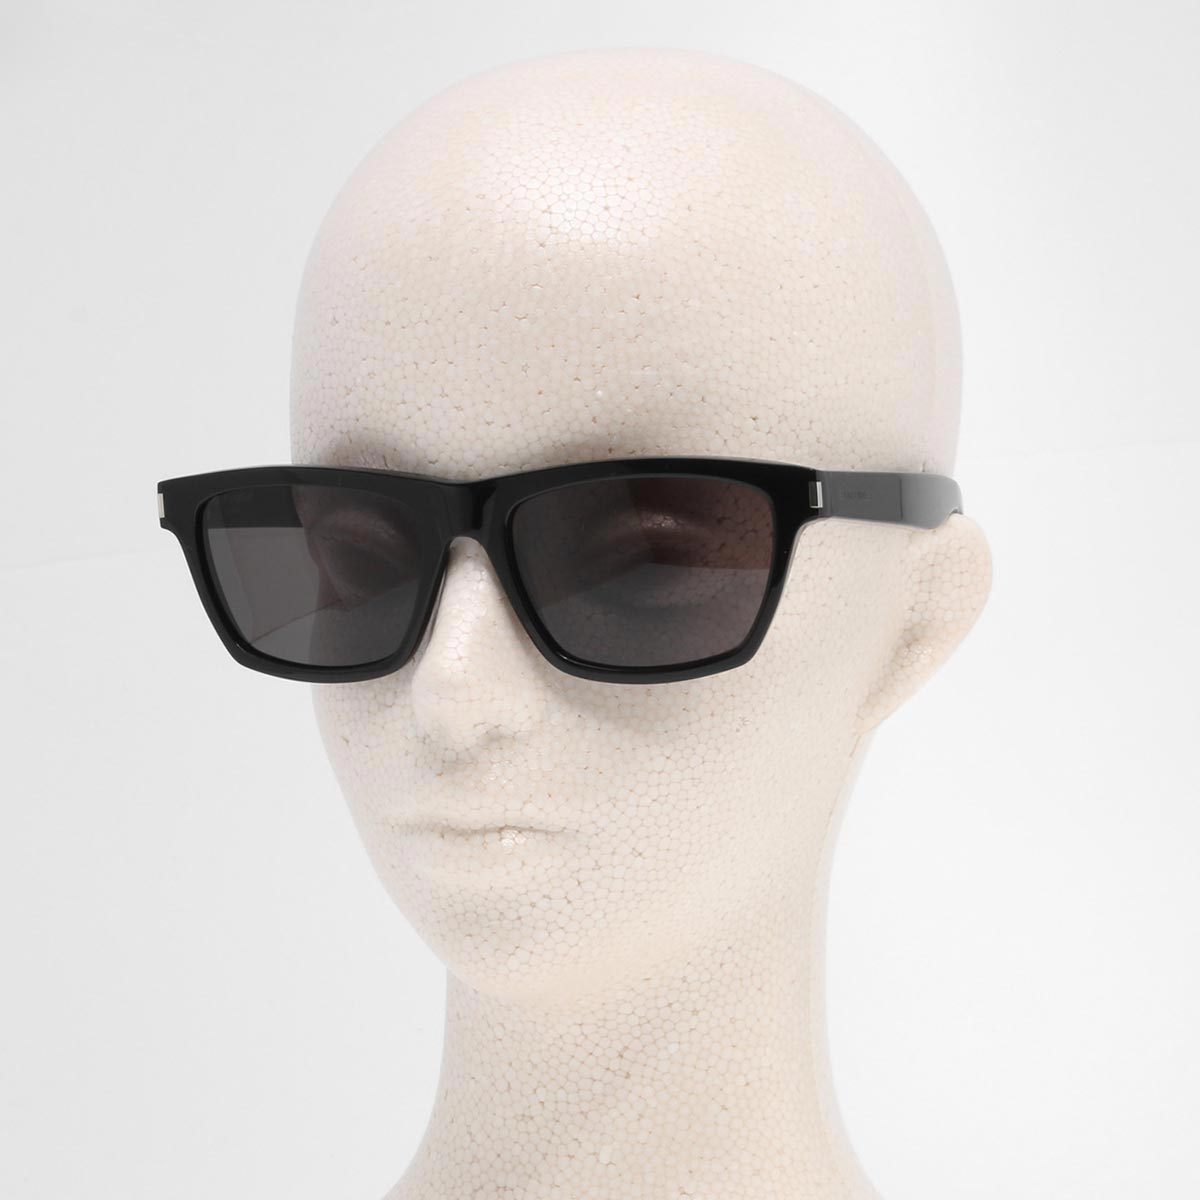 スクエアフレーム サングラス ユニセックス 黒 デザインサングラス